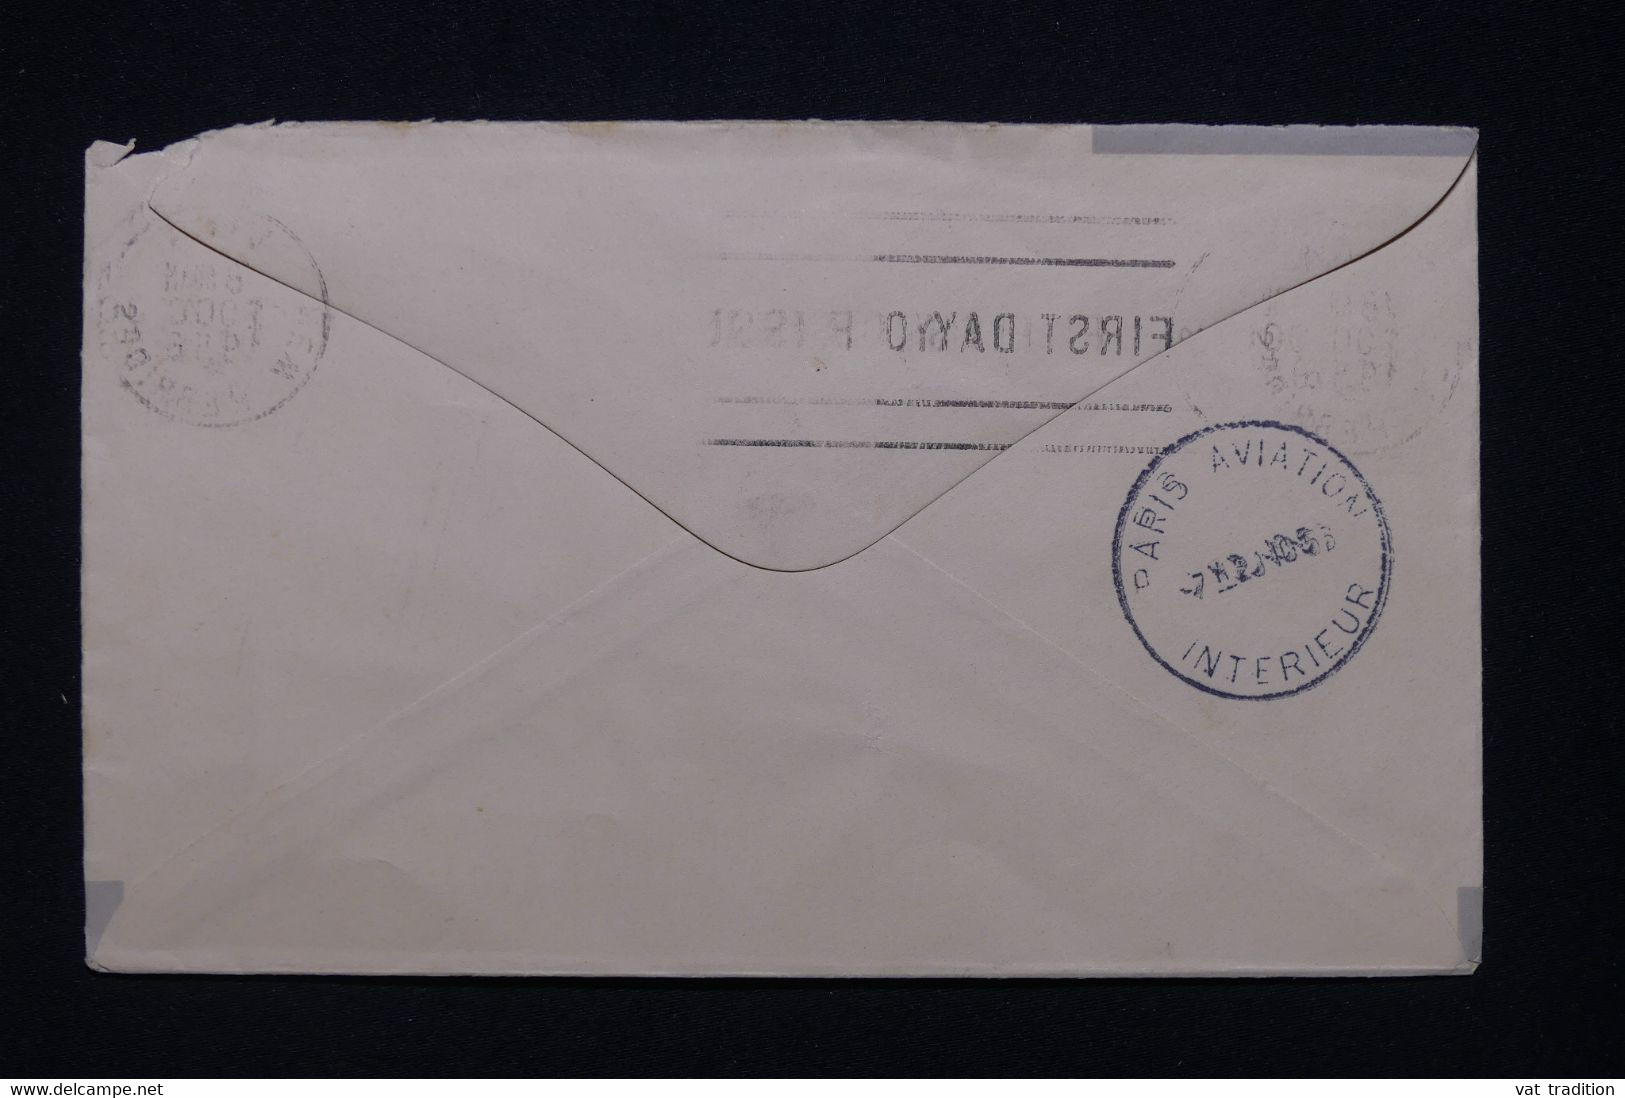 NOUVELLES HÉBRIDES - Enveloppe FDC En 1956 - Condominium Franco / Anglais - L 95933 - FDC